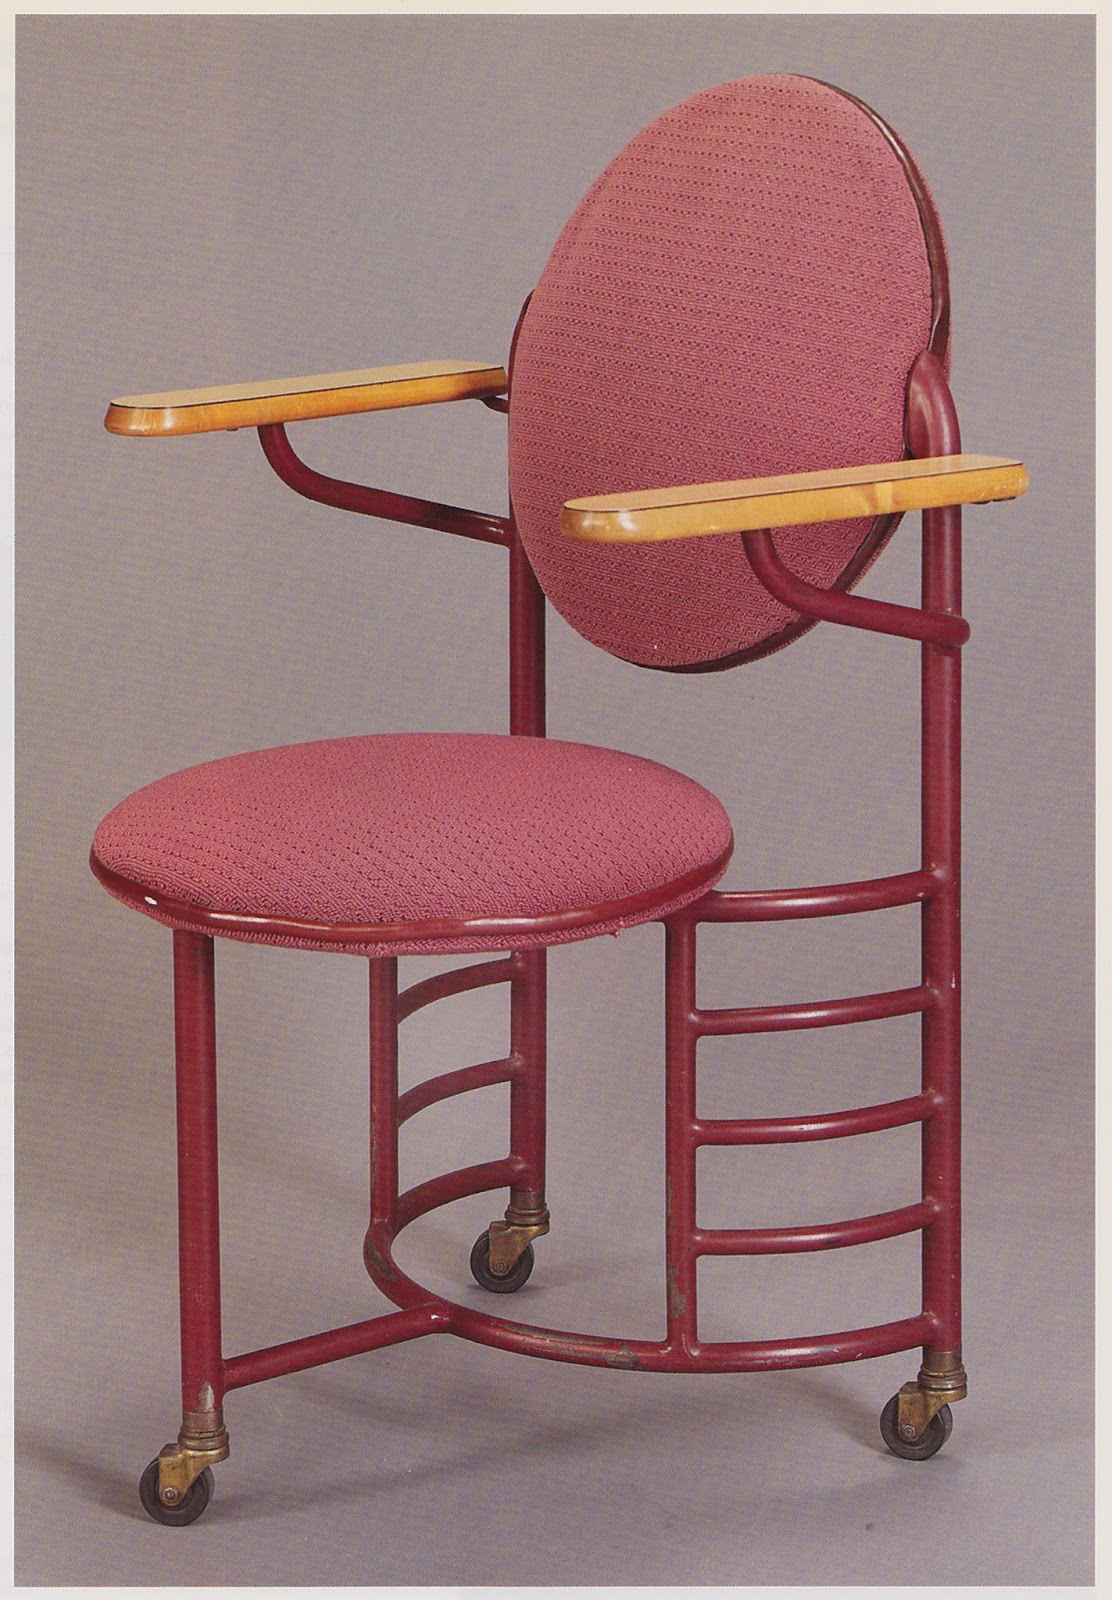 Frank lloyd wright  desk chair  1936 37